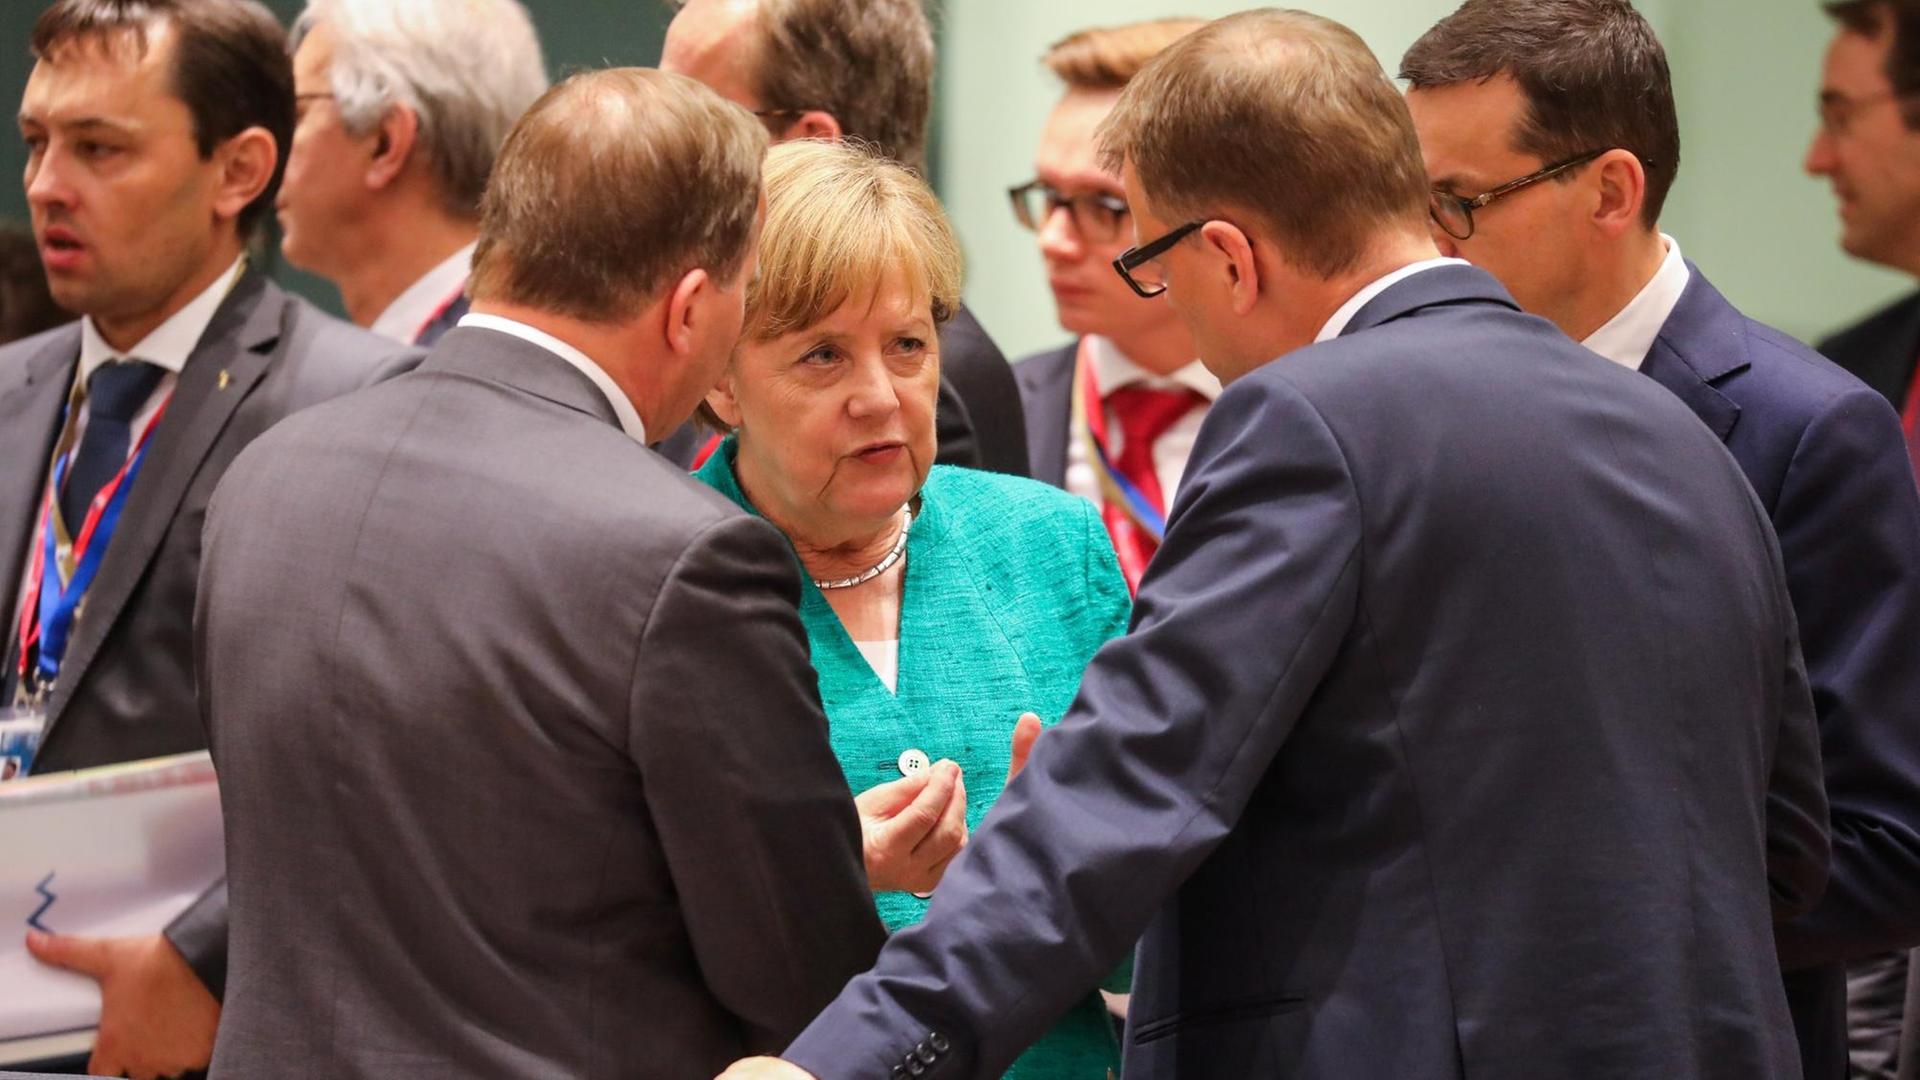 Merkel im Gespräch mit zwei Männern, die nur von hinten zu sehen sind.